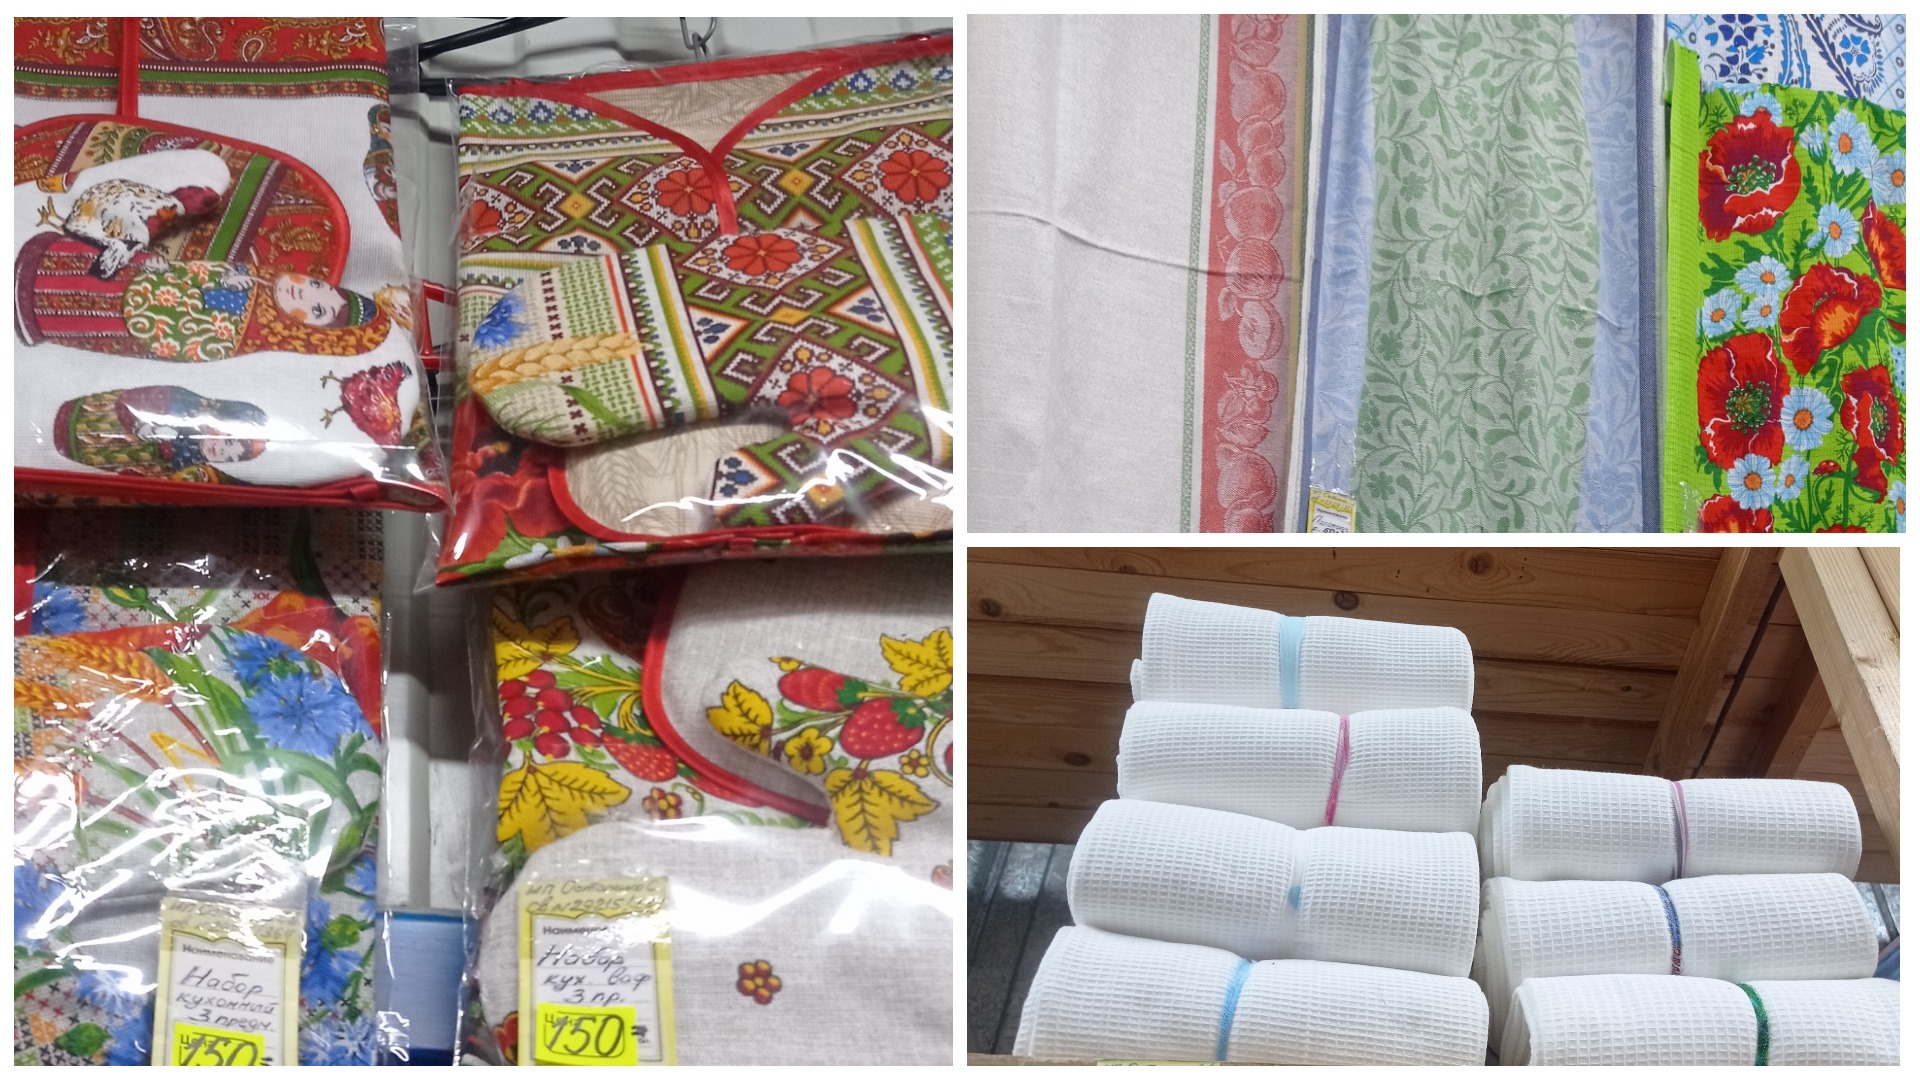 Текстиль от ивановского производителя, цены на текстильную продукцию.